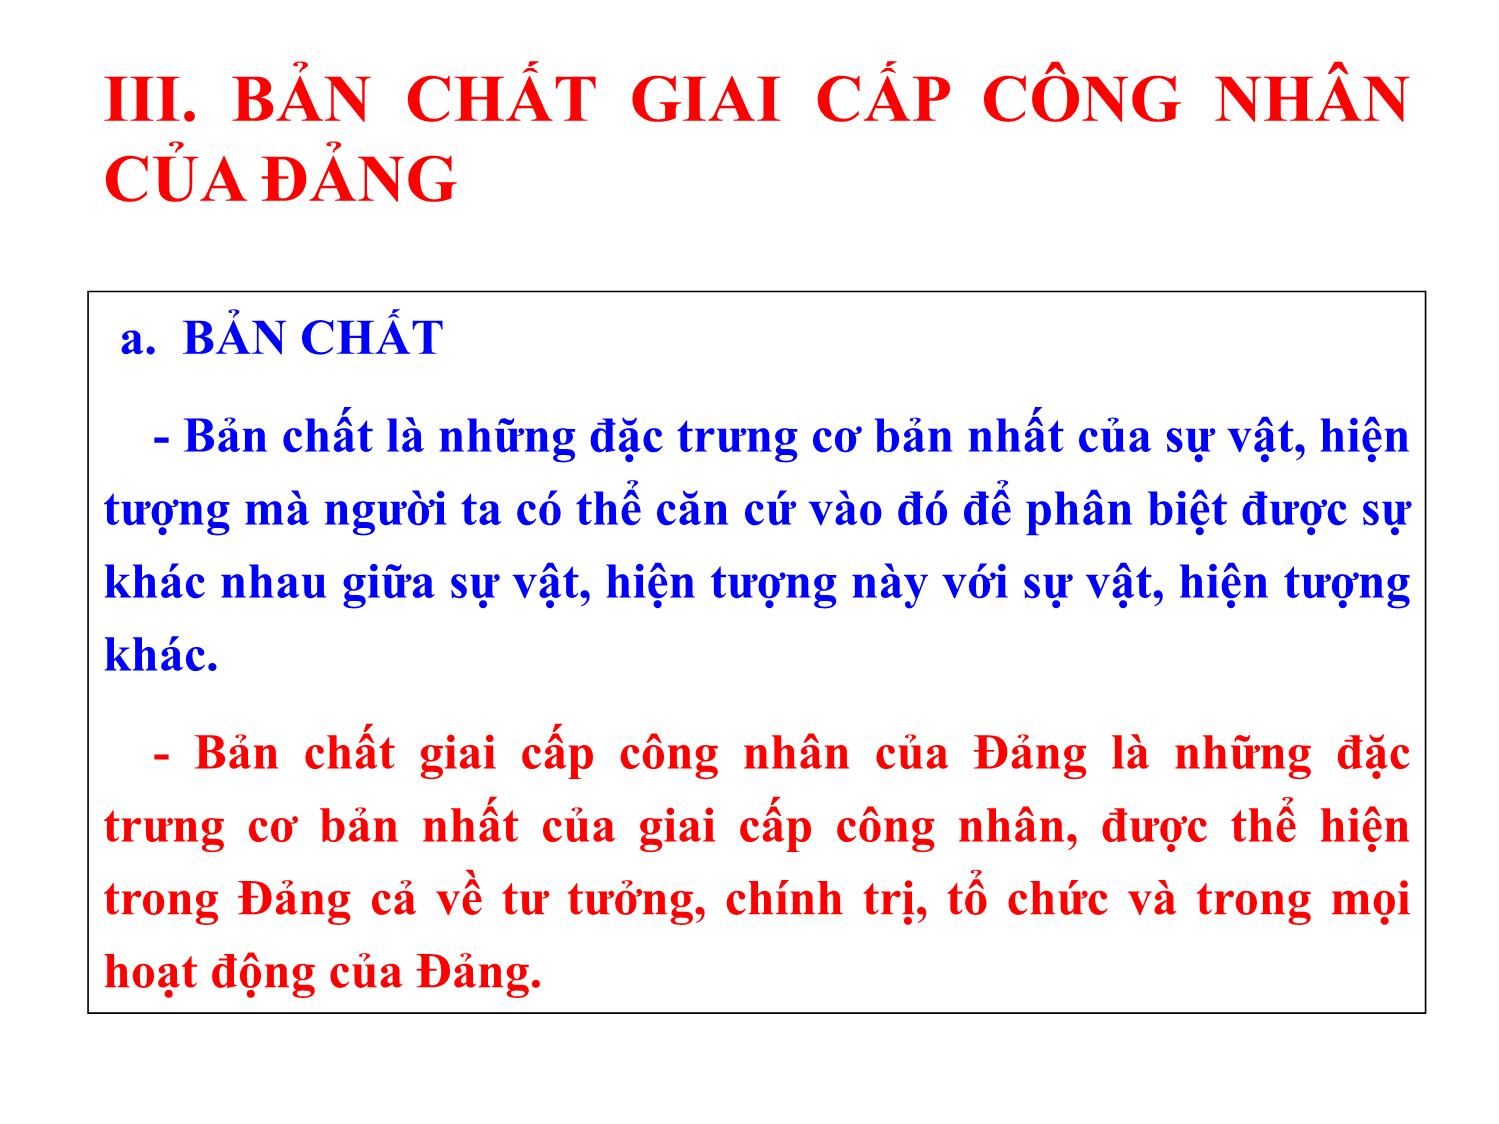 Bài giảng Học thuyết Mác-Lênin về Đảng Cộng sản - Nguyễn Xuân Phương trang 10